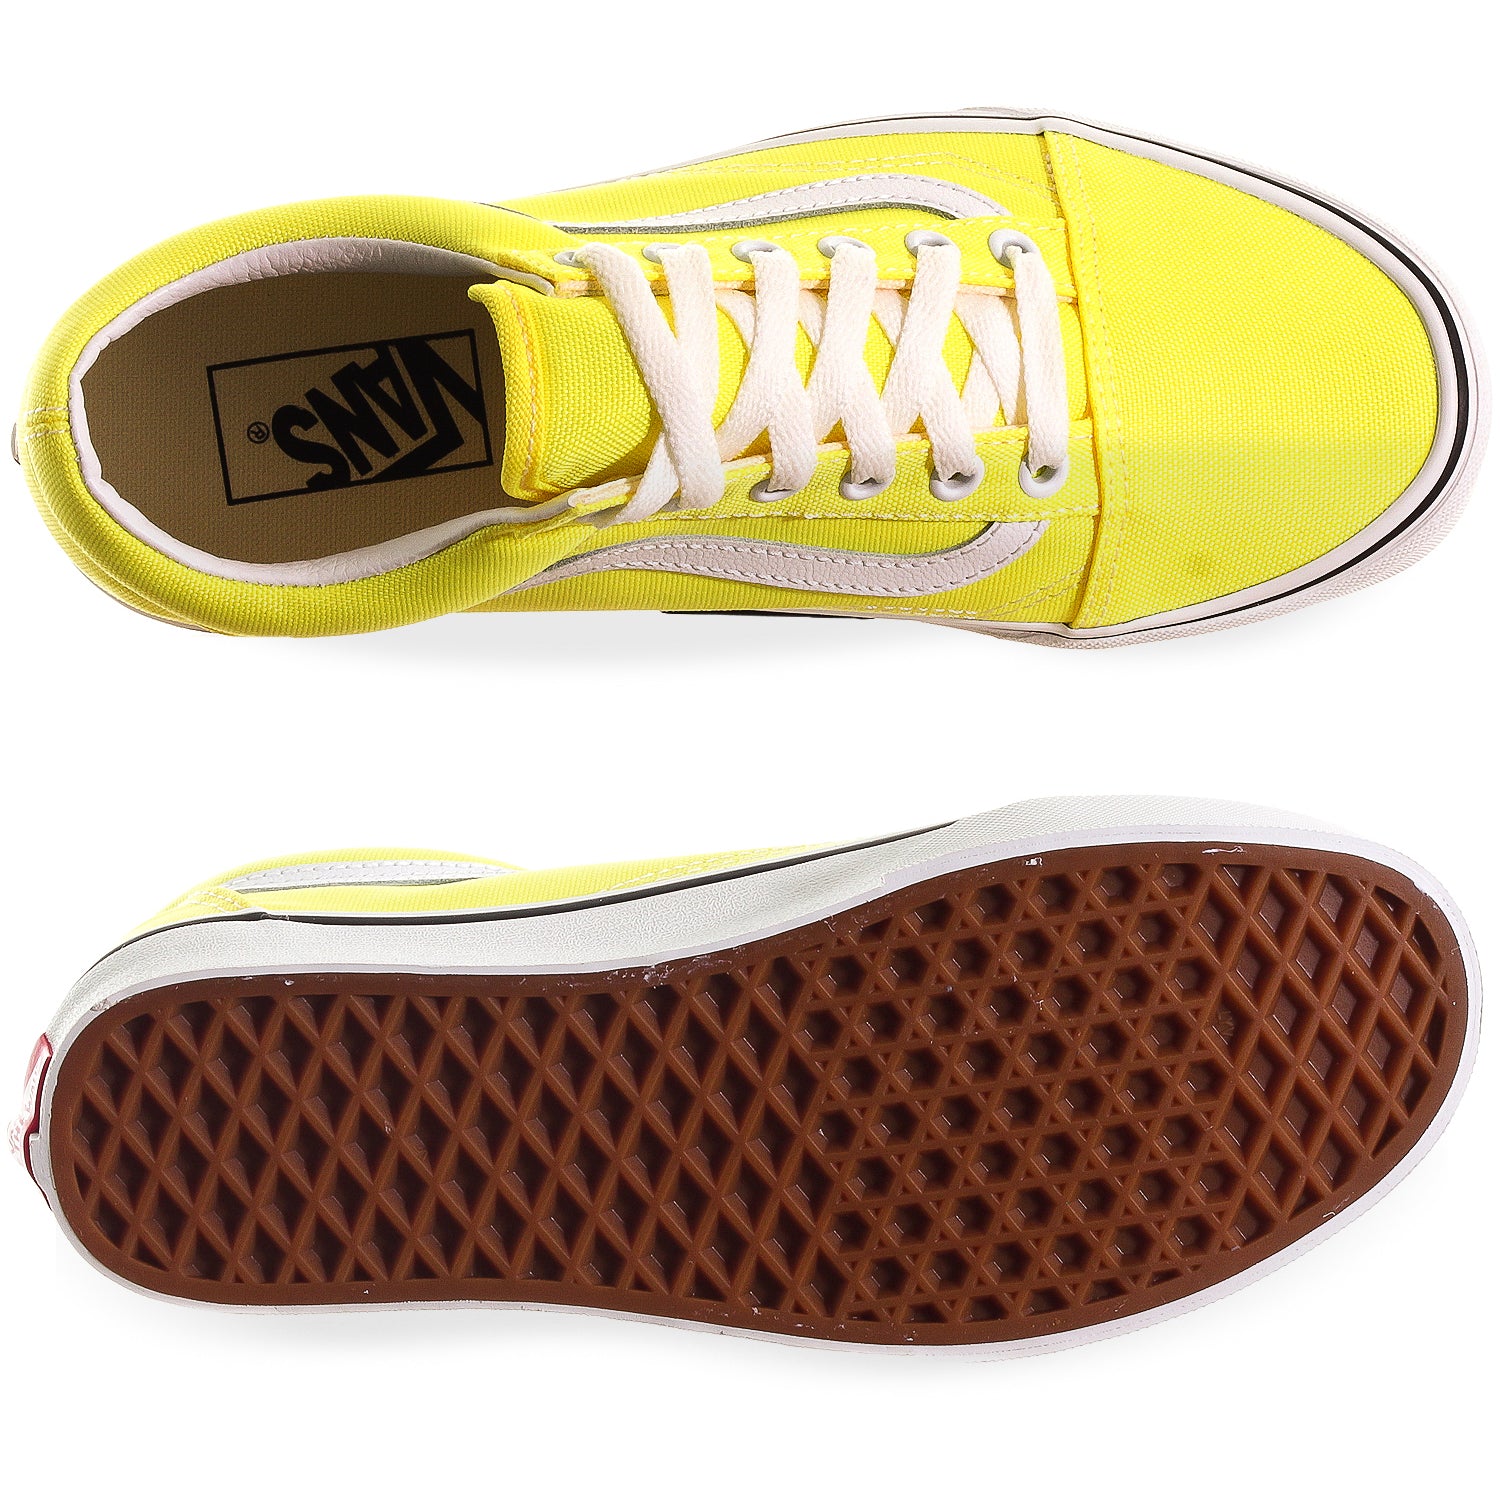 Tenis Vans Skool - 4U3BWT7 - Amarillo Volt Mujer | Shoelander.com - Footwear Retail